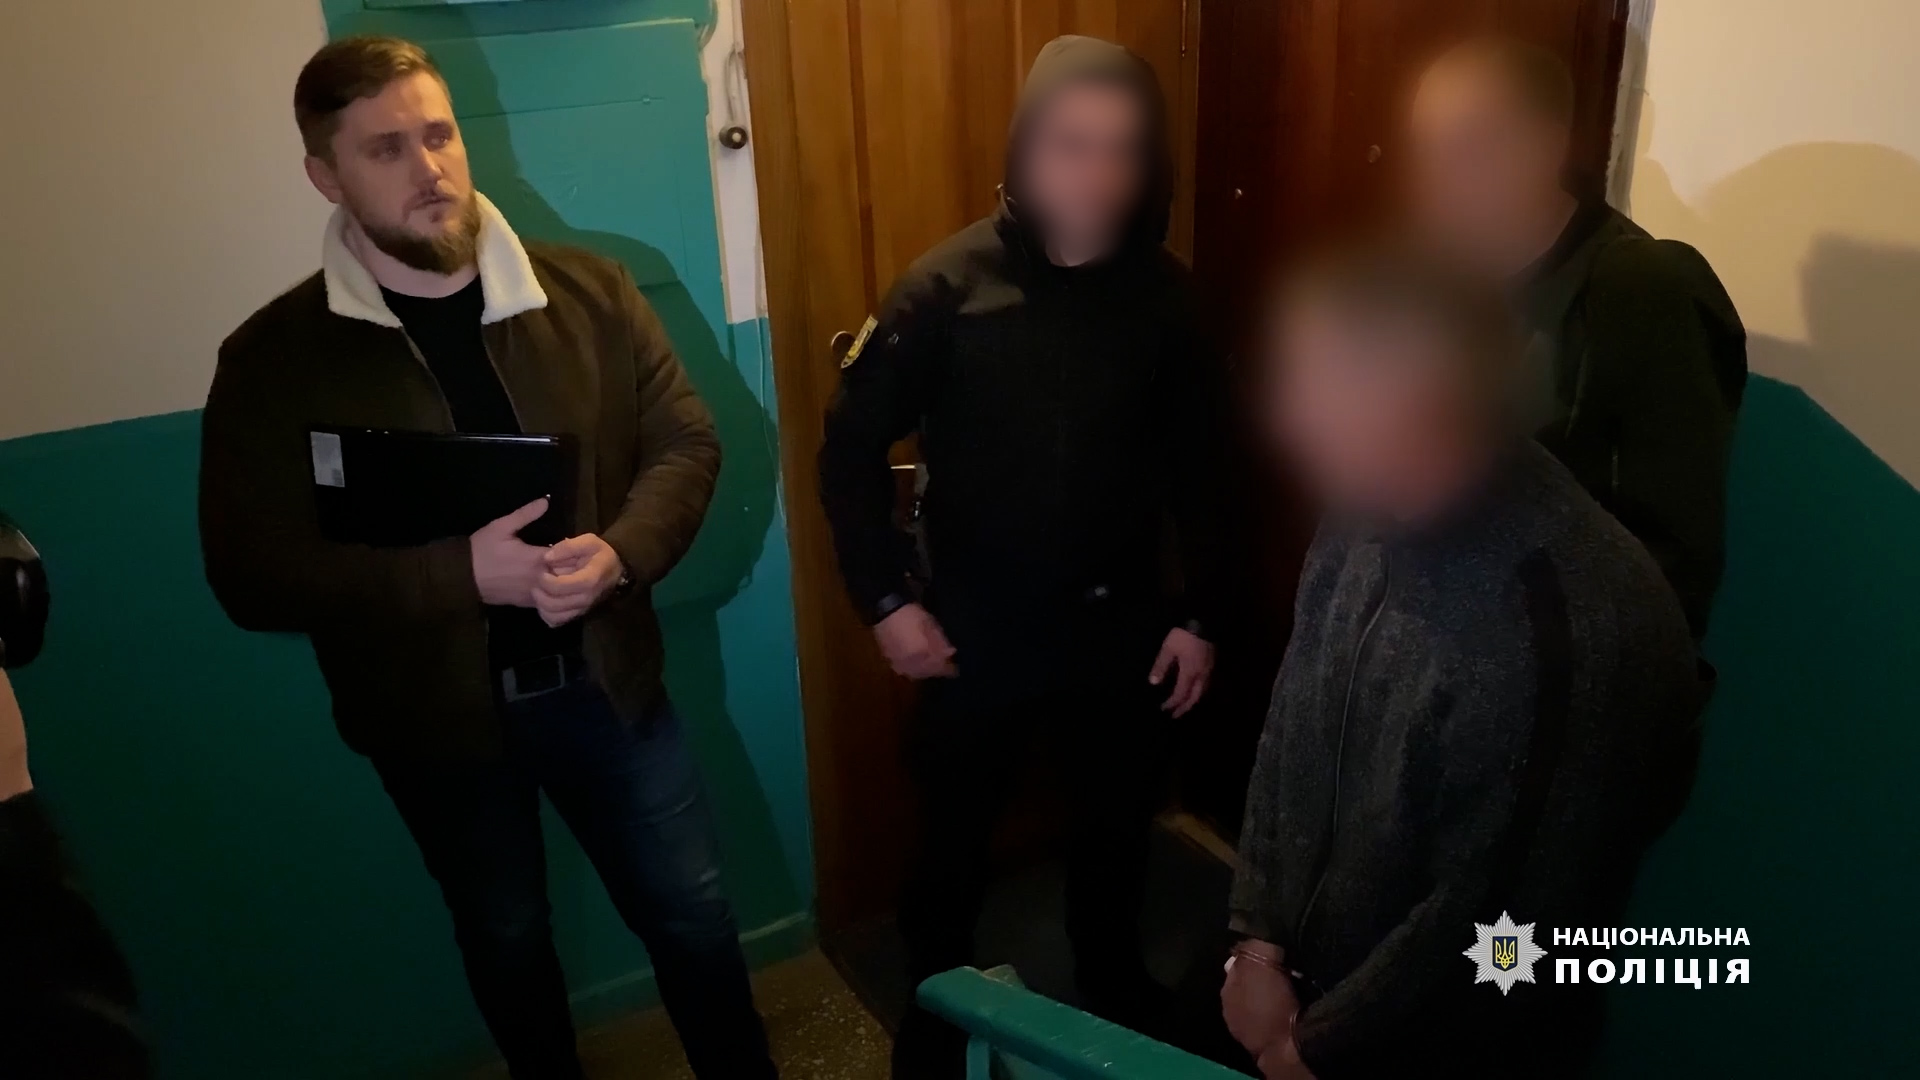 Полиция: Задержаны "Путин" и его банда, уголовники поджигали квартиры – видео, фото